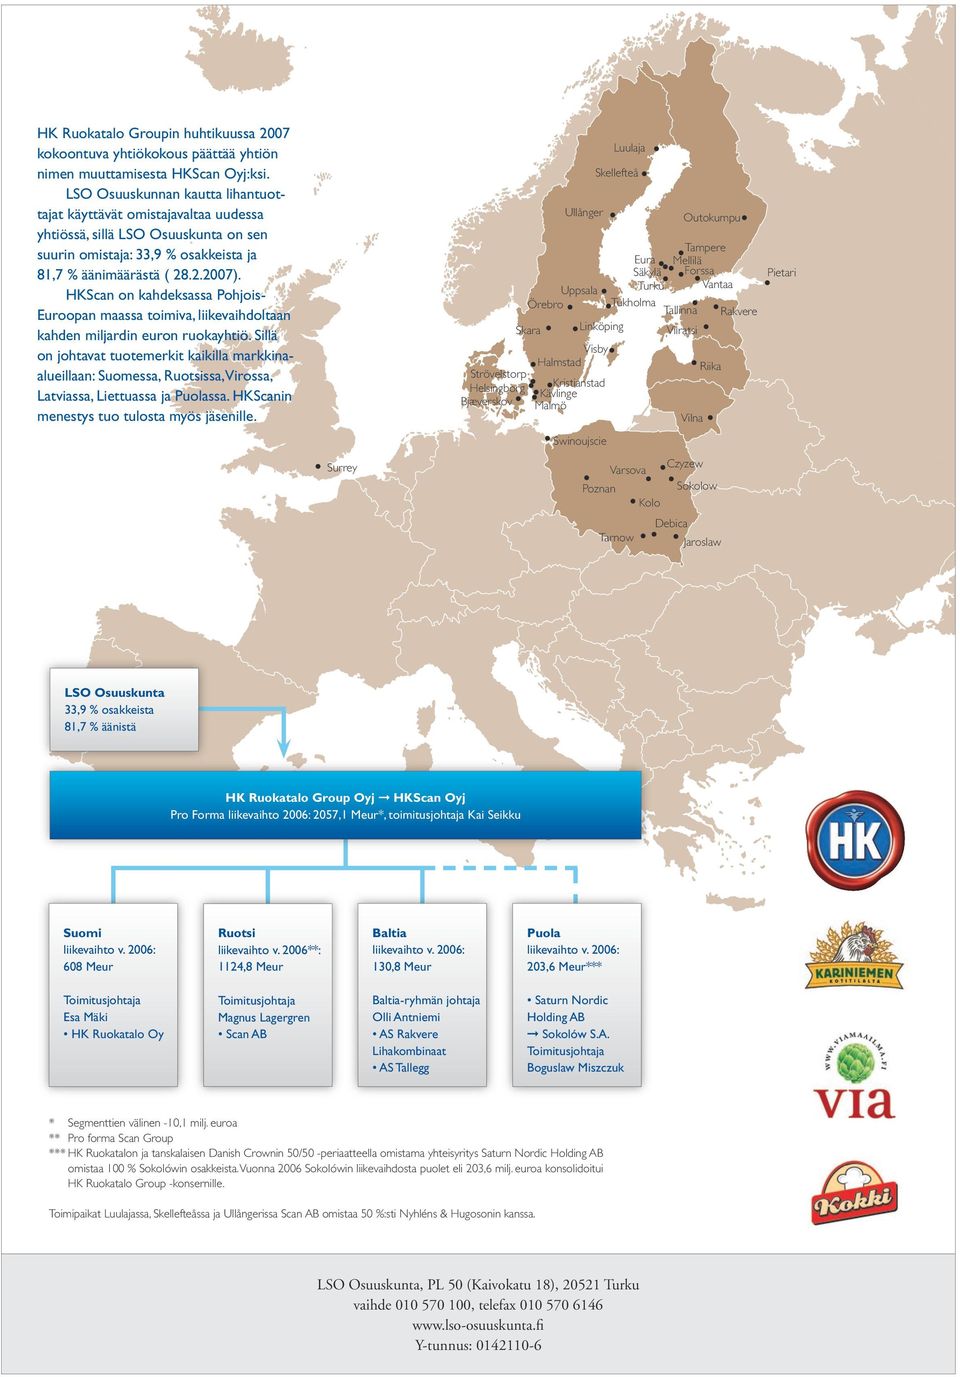 HKScan on kahdeksassa Pohjois- Euroopan maassa toimiva, liikevaihdoltaan kahden miljardin euron ruokayhtiö.